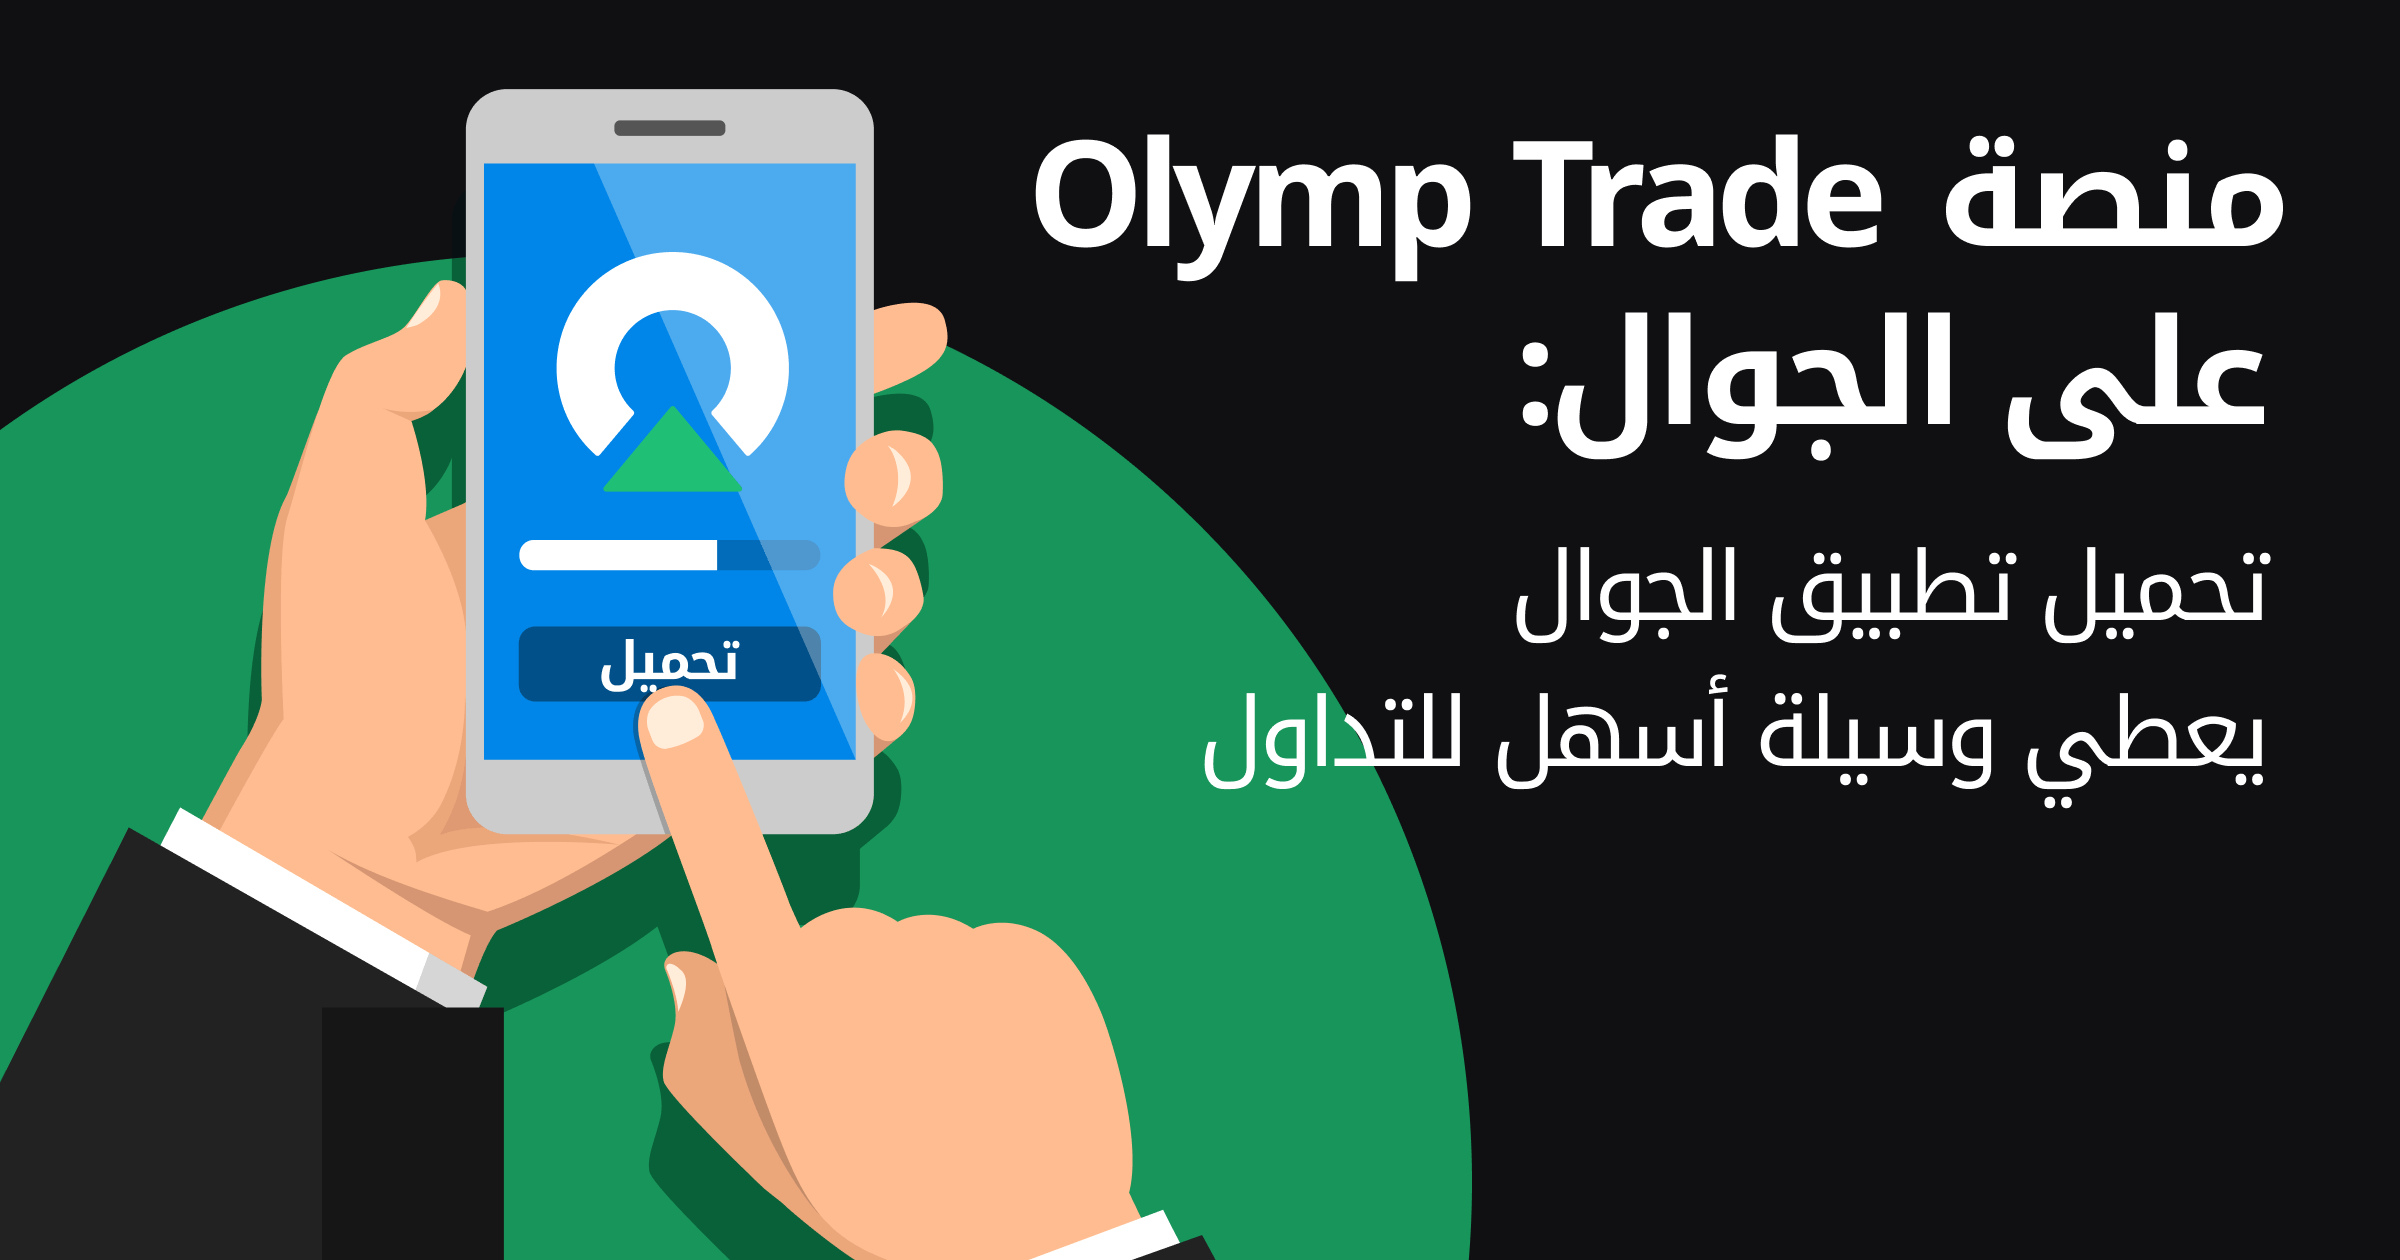 منصة Olymp Trade على الجوال: تحميل تطبيق الجوال يعطي وسيلة اسهل للتداول امامها يد تحمل هاتف ذكي فيه تحميل